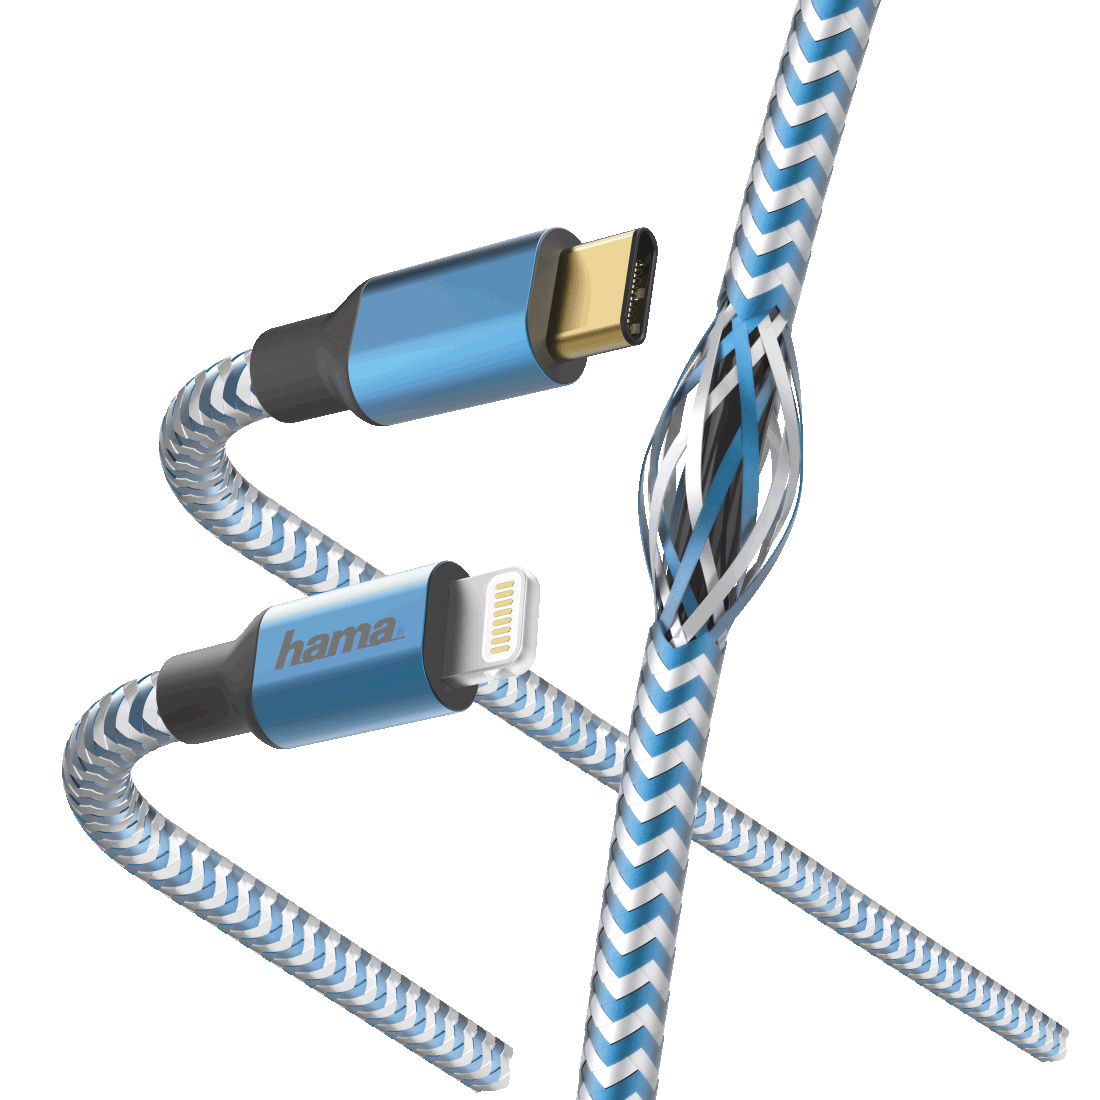 Кабель Hama 00183311 Lightning USB Type-C (m) 1.5м синий кабель интерфейсный hama 00183311 lightning usb type c m 1 5м синий